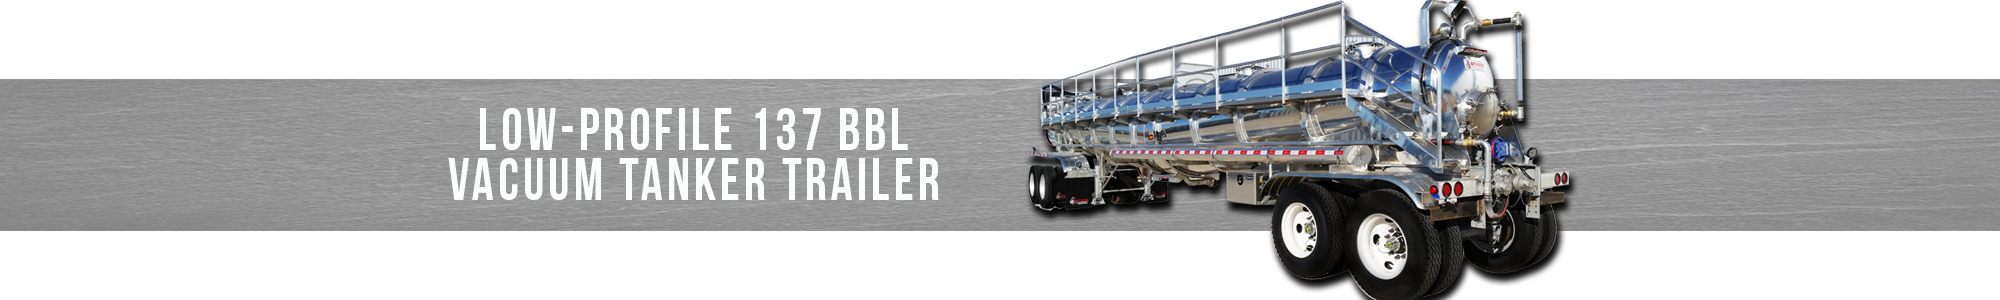 Low-Profile 137 BBL Vacuum Tanker Trailer